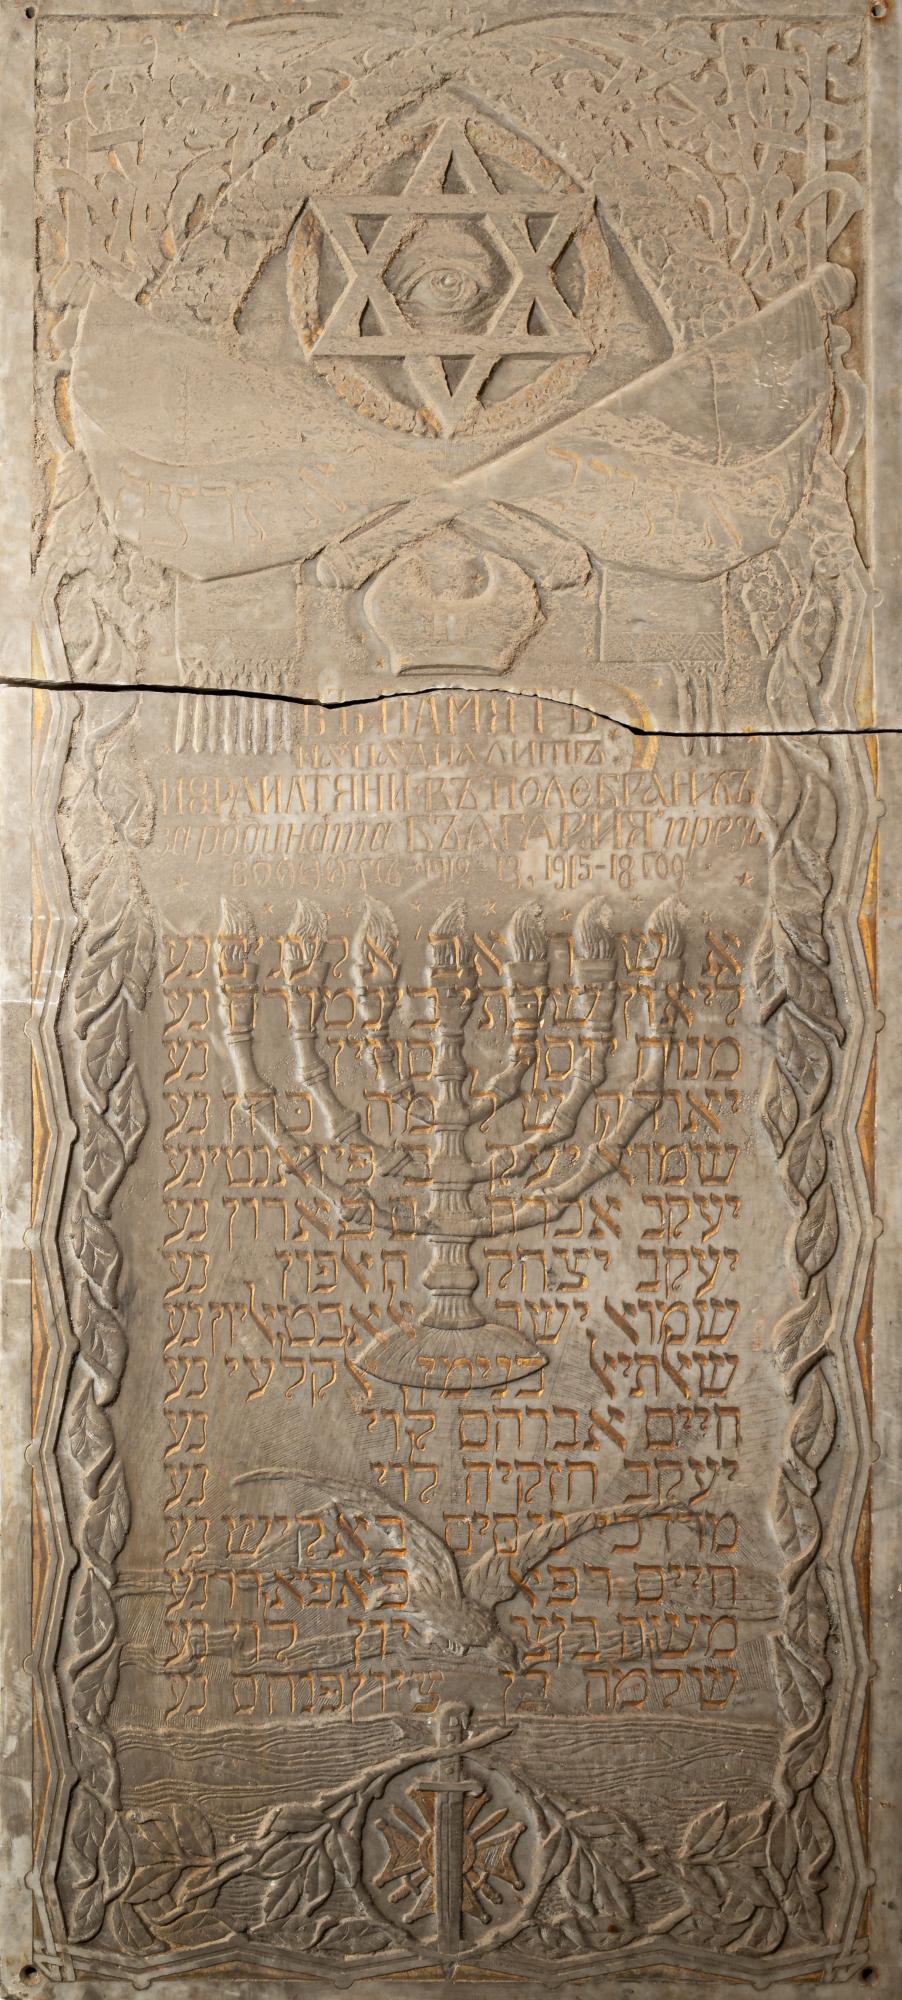 Възпоменателни плочи на загиналите евреи видинчани през войните 1912-1913 и 1915-1918 г.